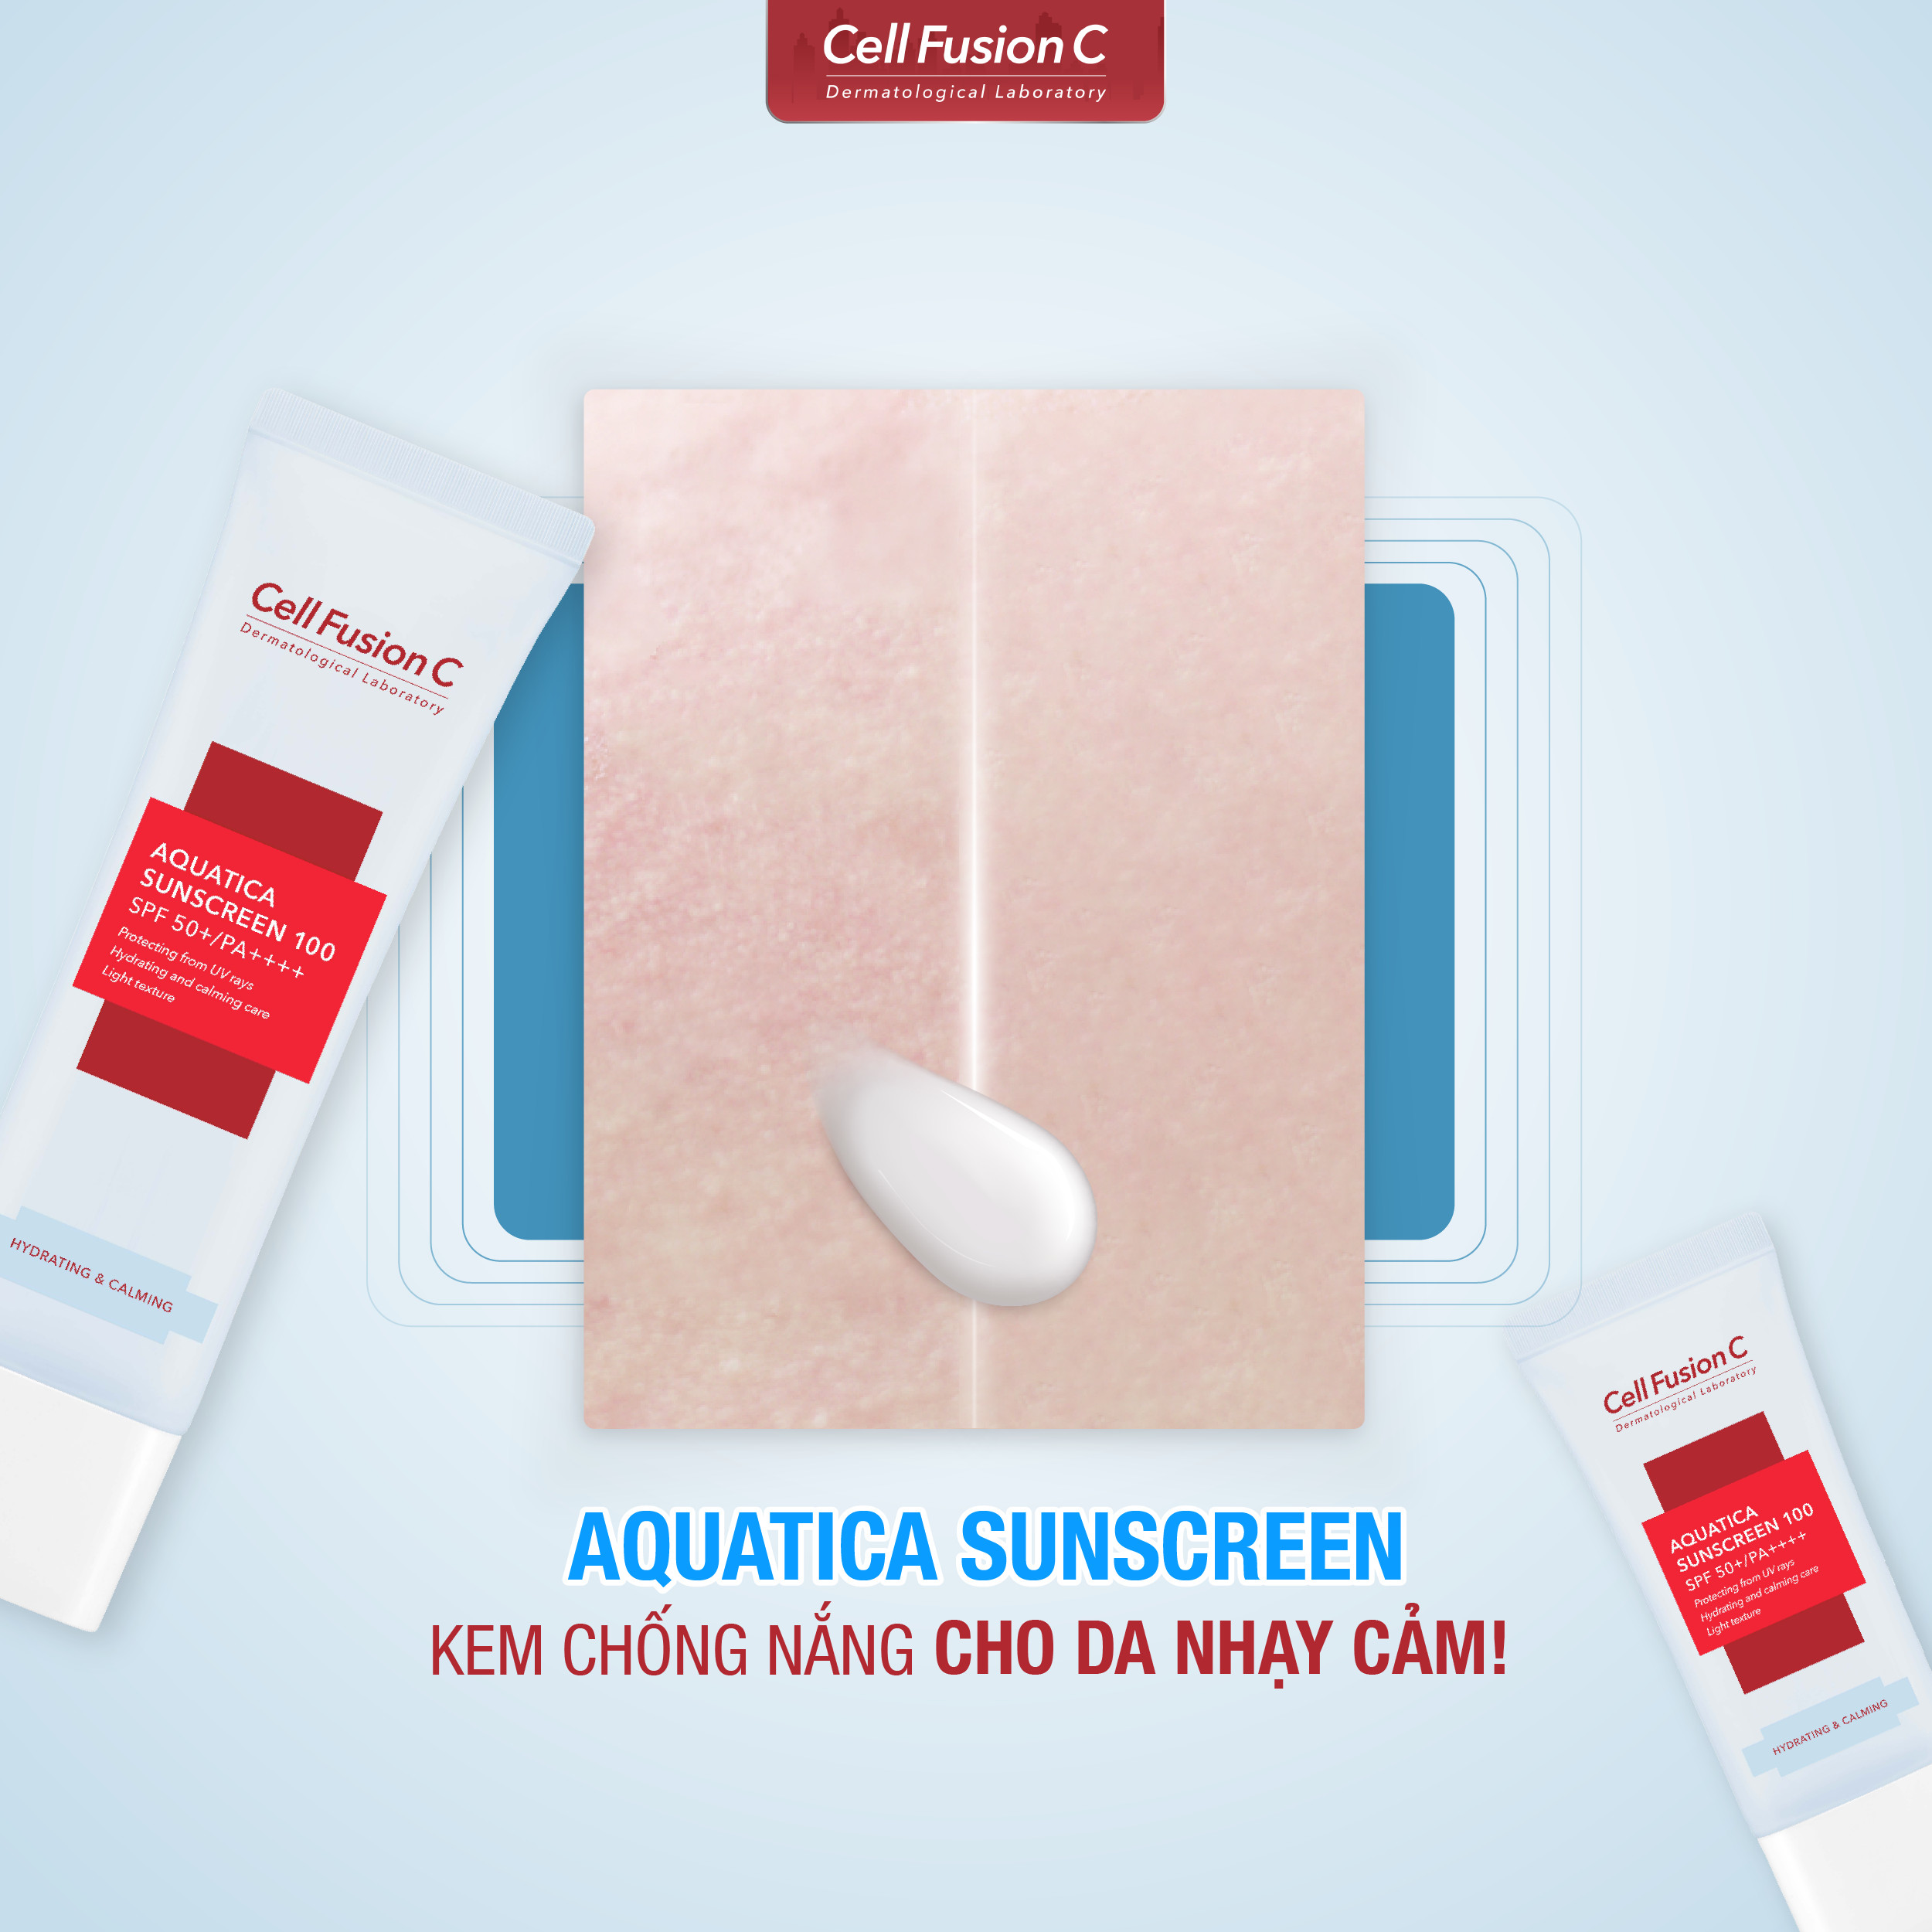 Kem Chống Nắng Cell Fusion C Aquatica Sunscreen 100 SPF50+PA++++ Cấp Ẩm Dịu Da 50ml